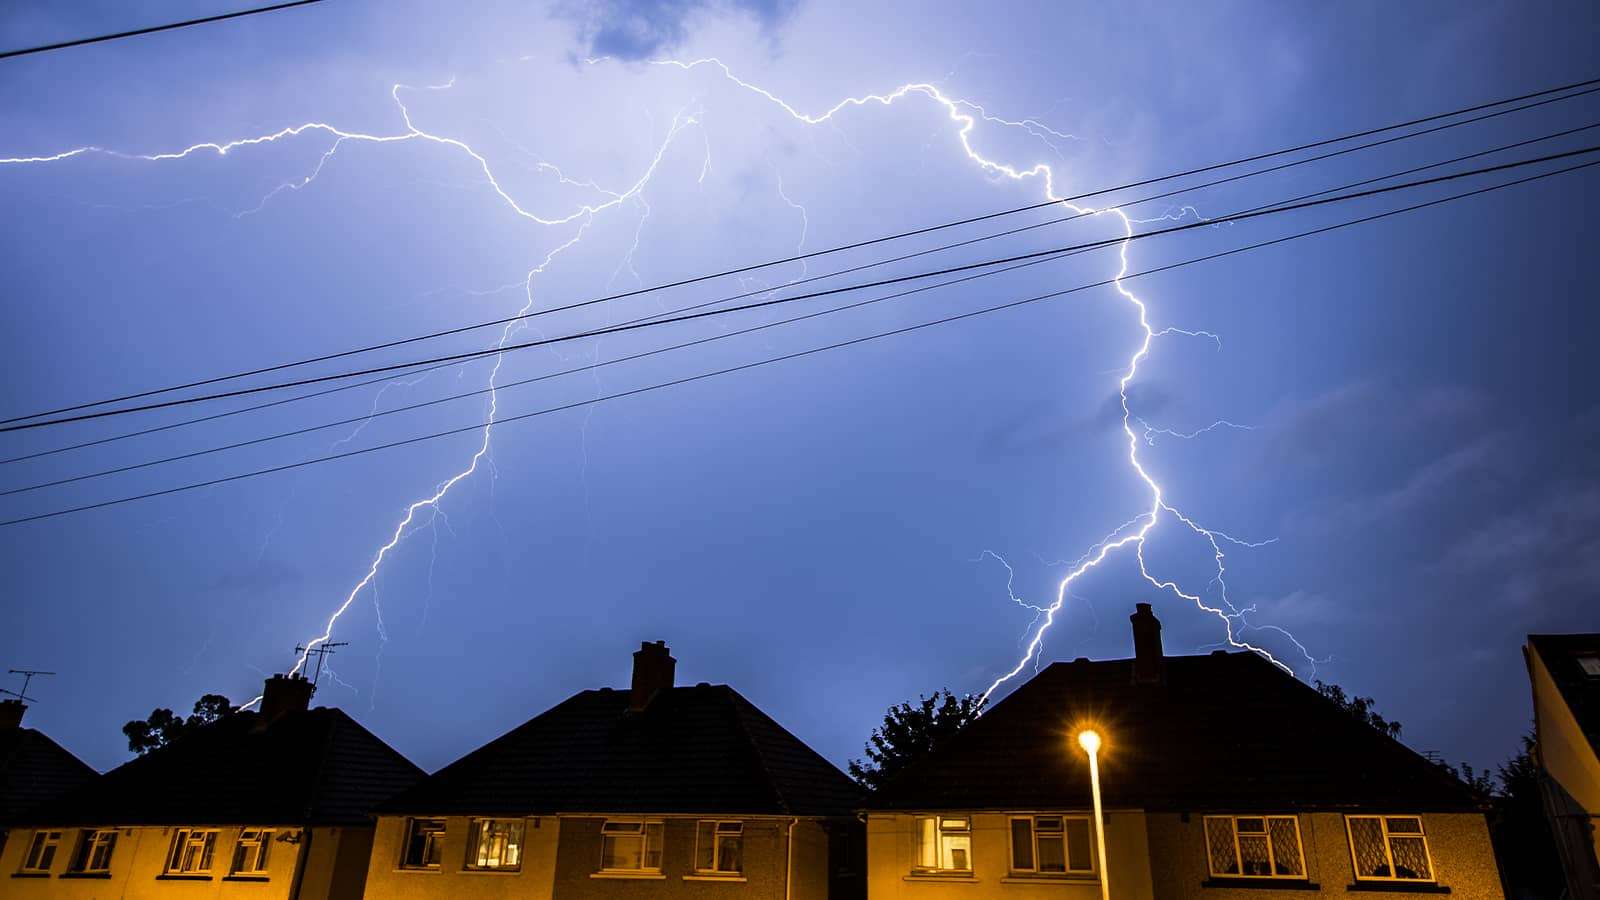 lightning over houses